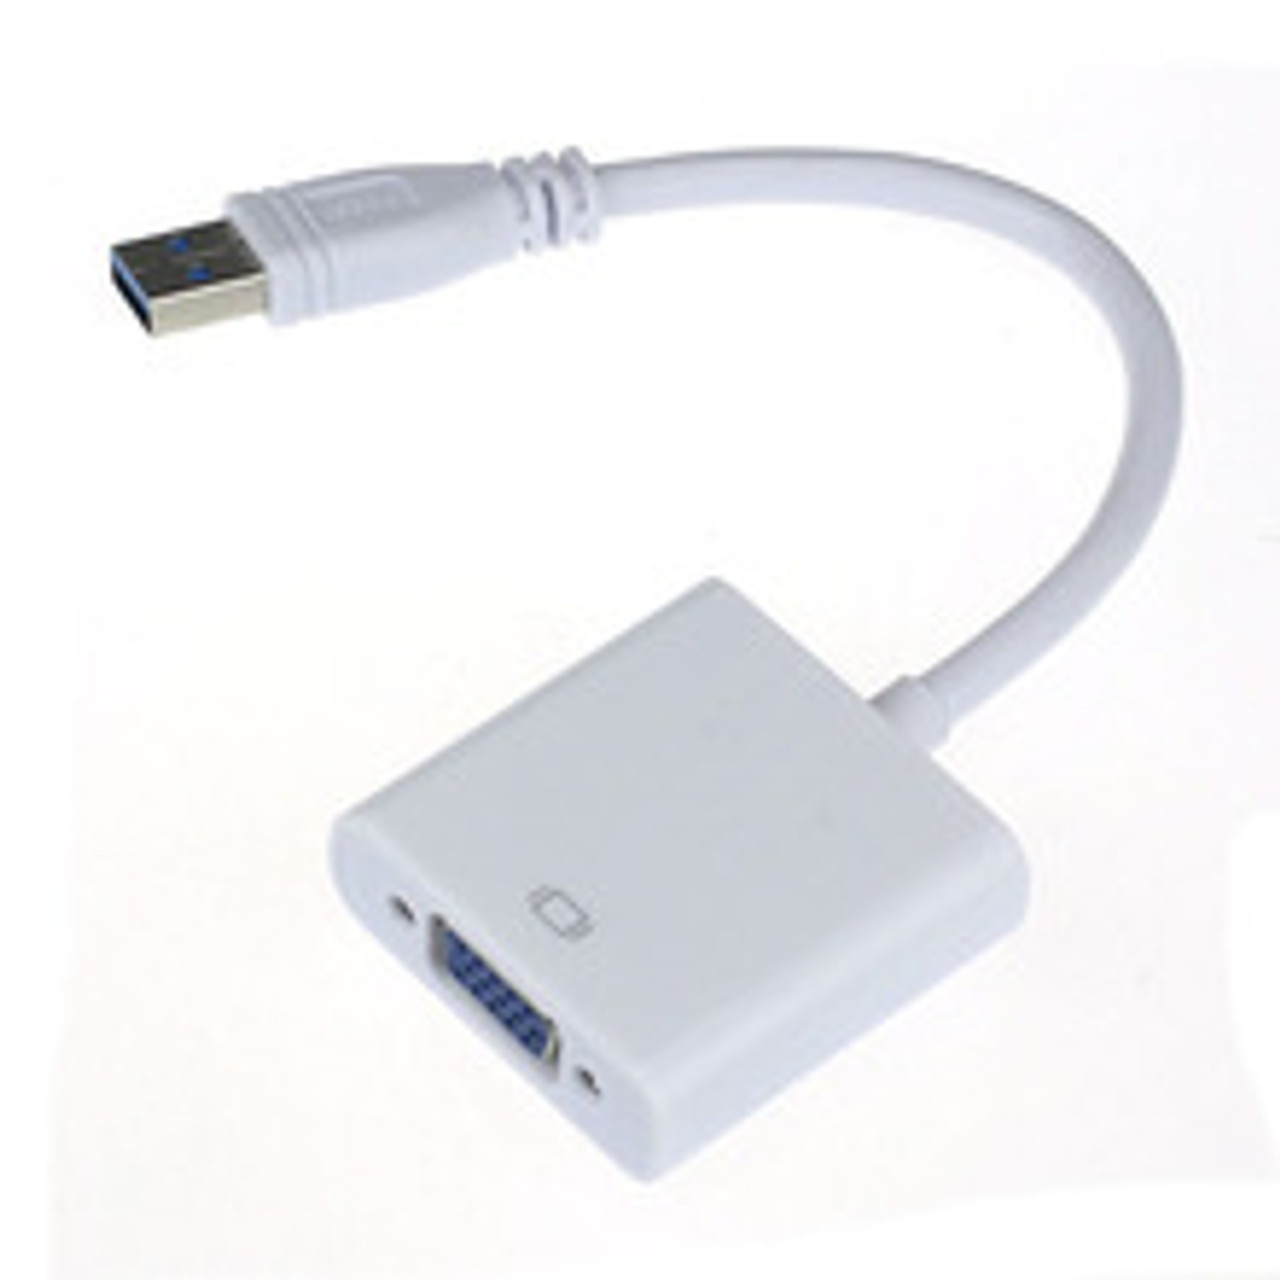 USB 3.0 to VGA USB3 up to 1920x1080, USB2 up to 800x600 - Weston Technology Australia Pty Ltd